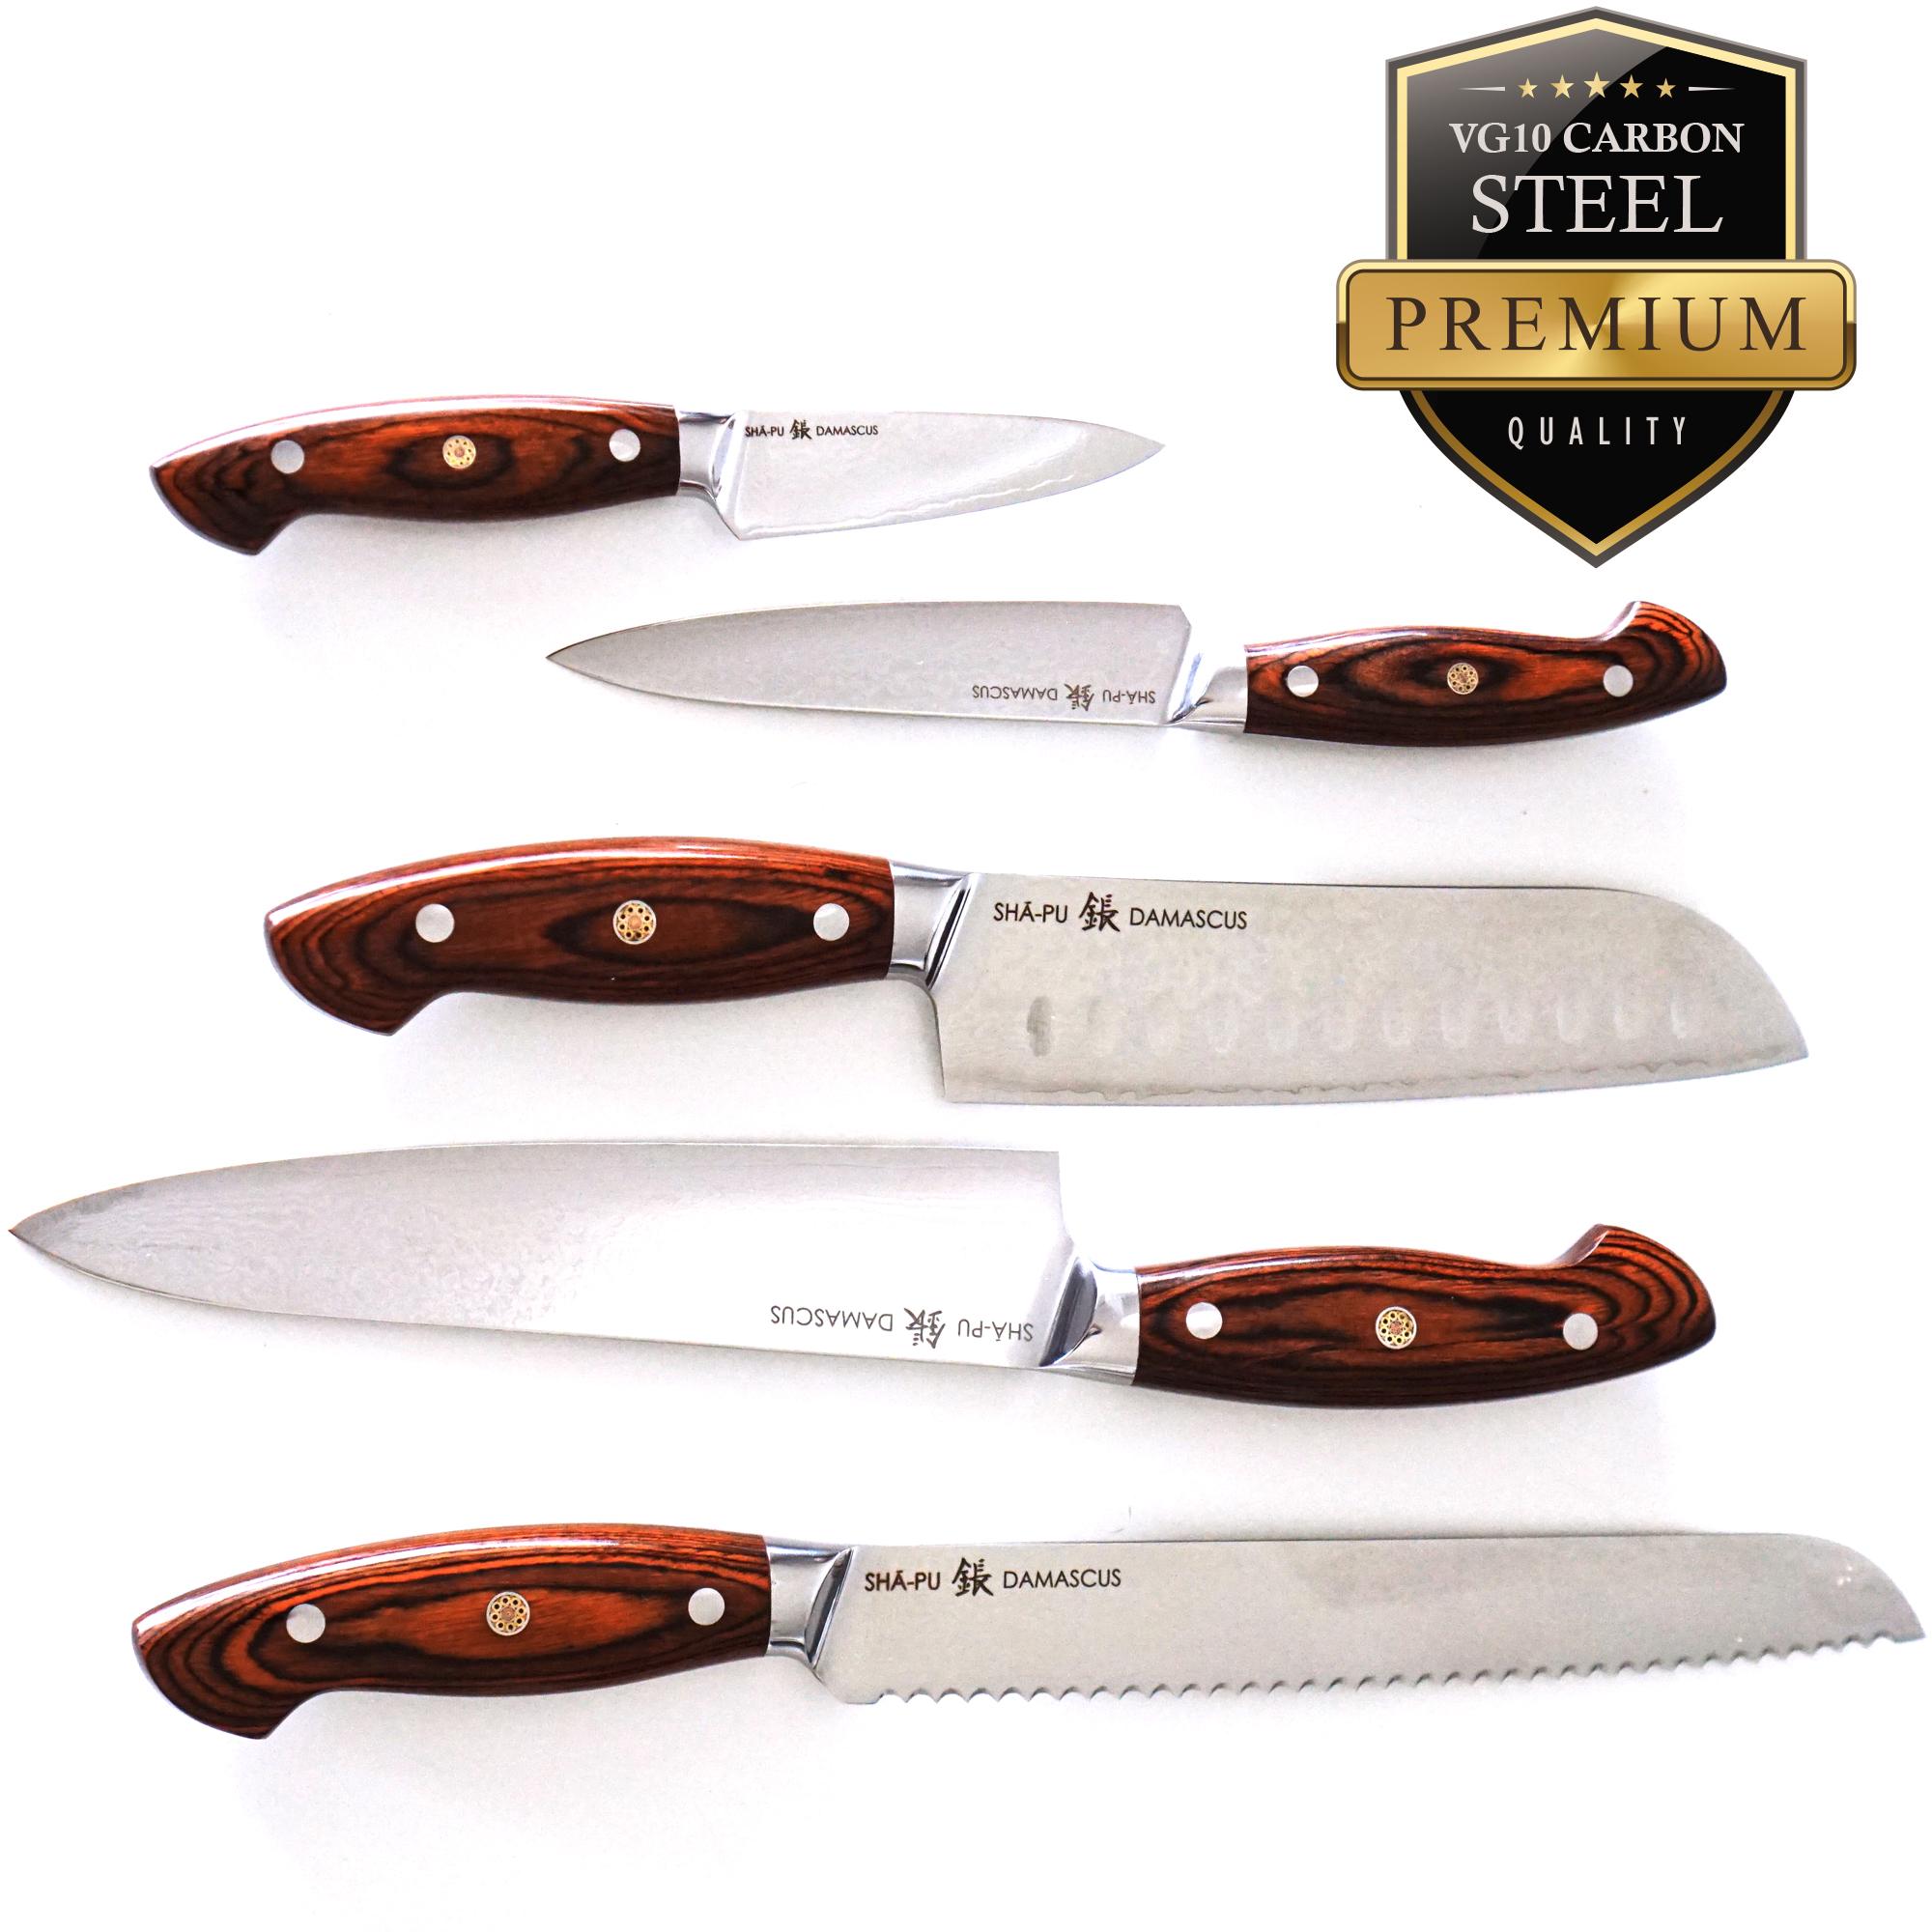 5-Piece Sapphire Kitchen Knife Set